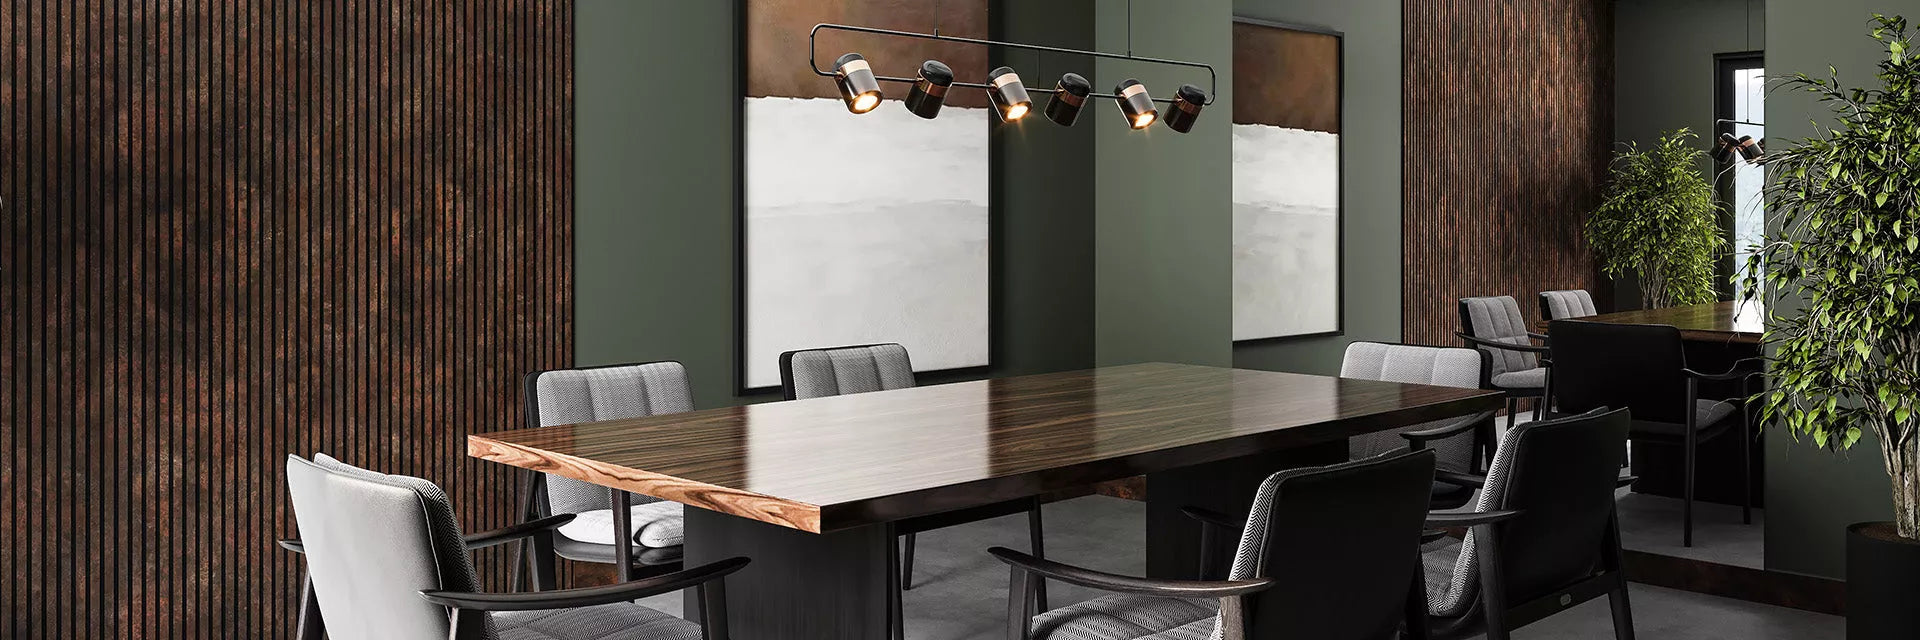 Sala de reuniões com uma mesa de madeira, seis cadeiras acolchoadas com um ambiente contendo plantas ao redor e luzes sob a mesa.